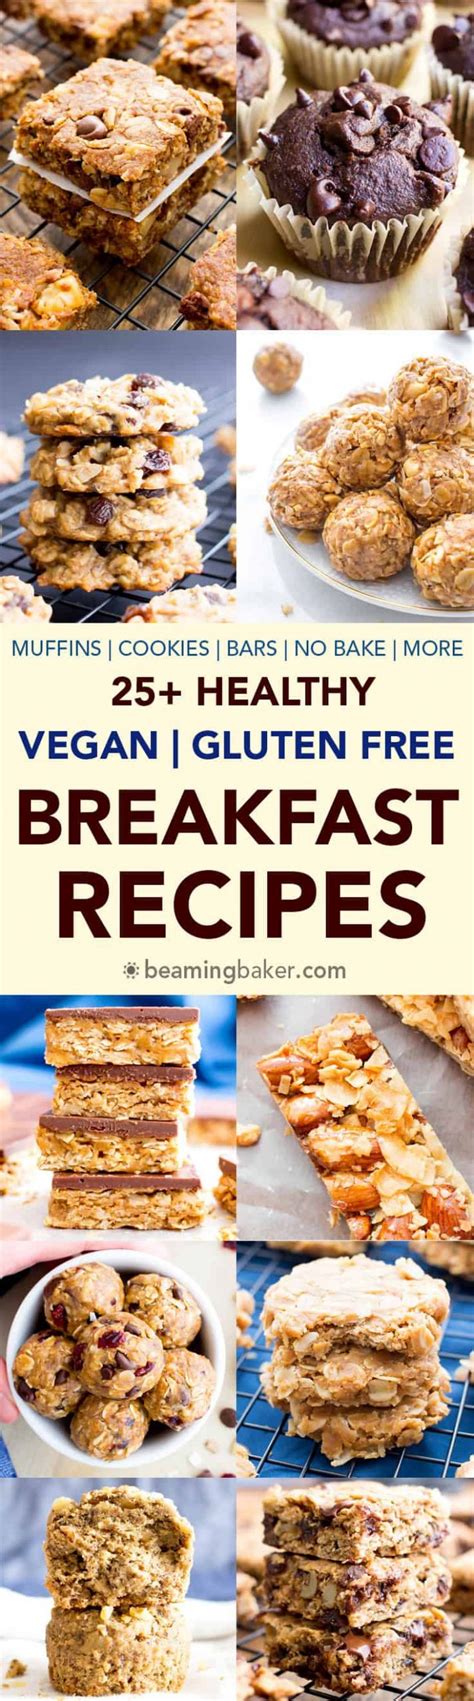 20 Of The Best Ideas For Vegan Gluten Free Breakfast Recipes Best